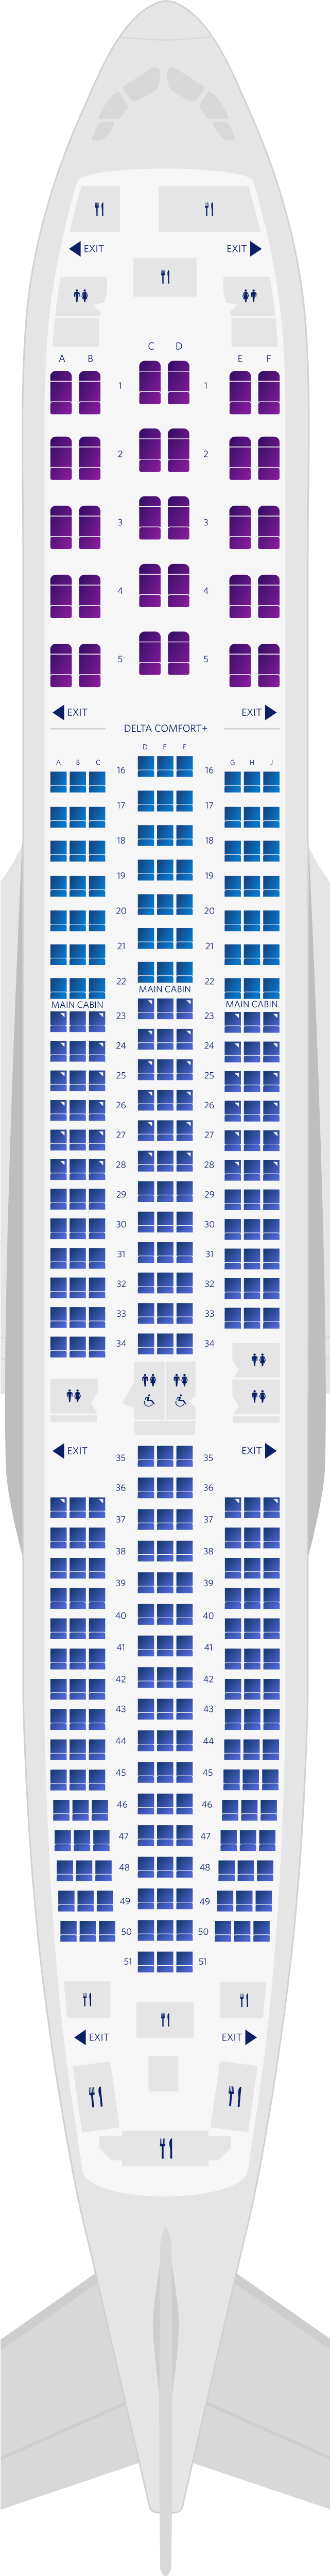 Mappa dei posti a sedere della cabina dell’Airbus A350-900 3